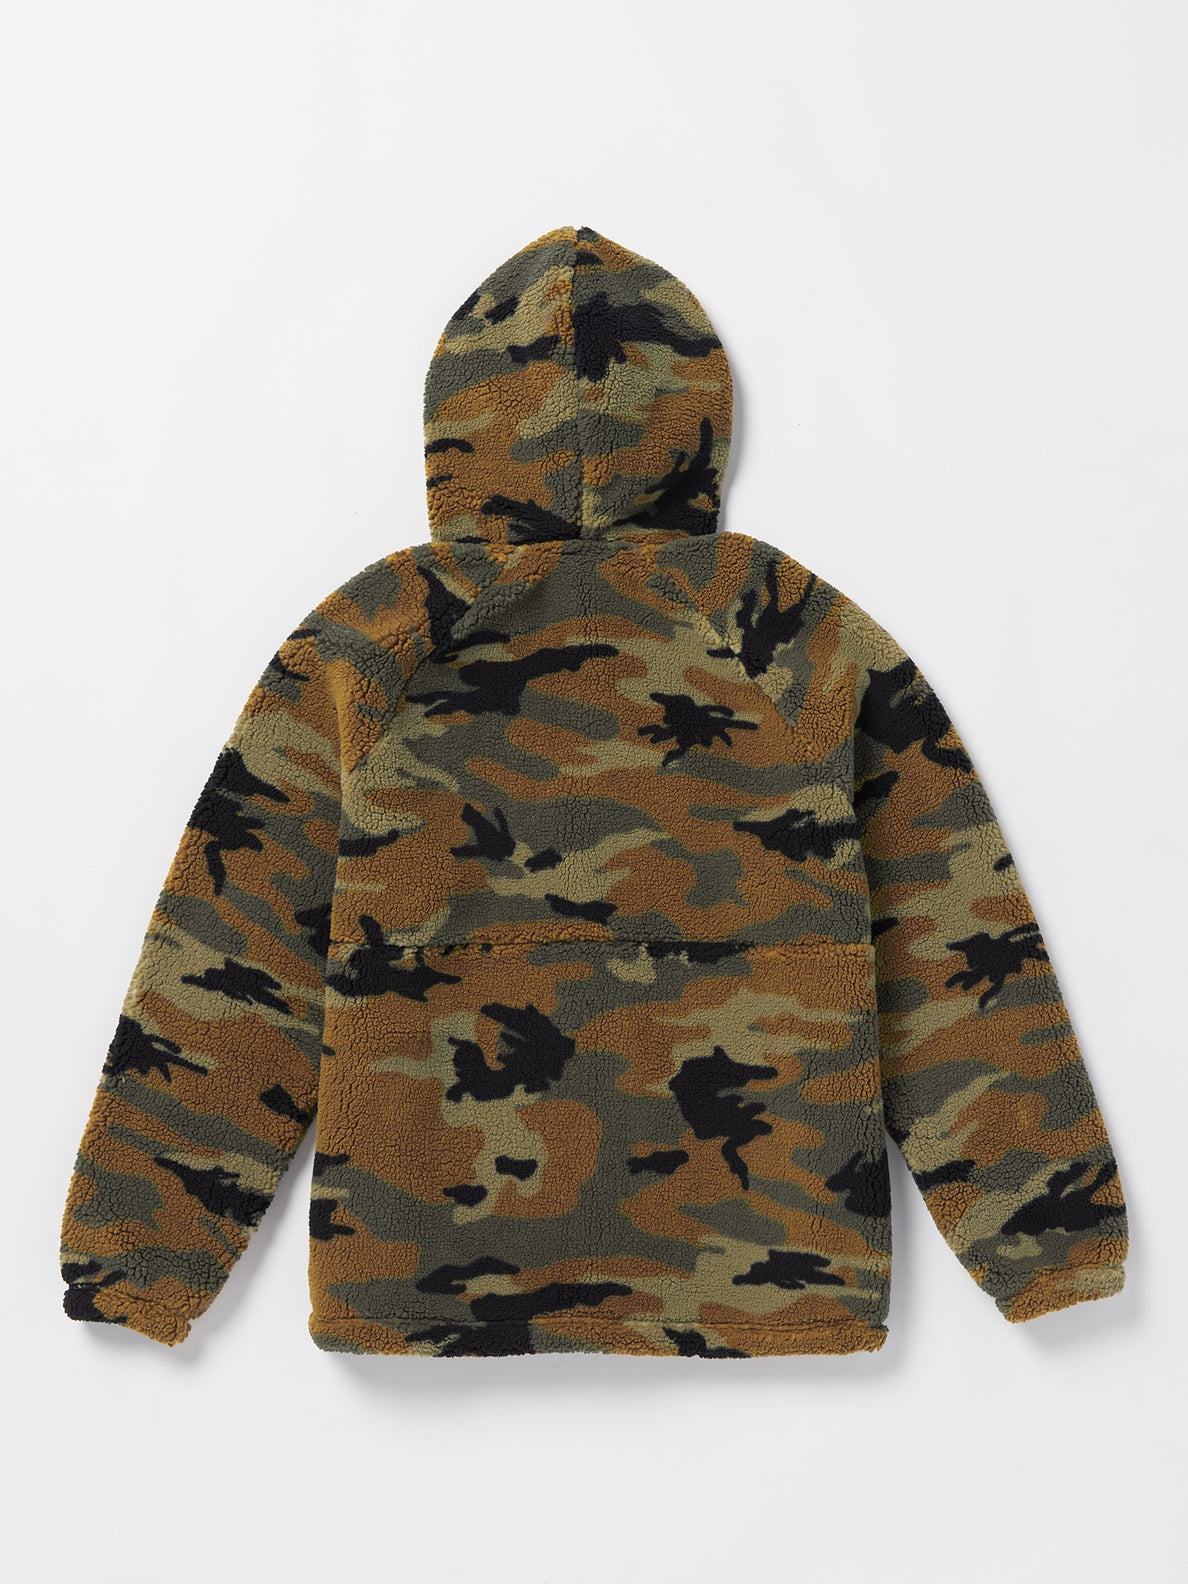 Arstone Zip Fleece Jacket - Camouflage